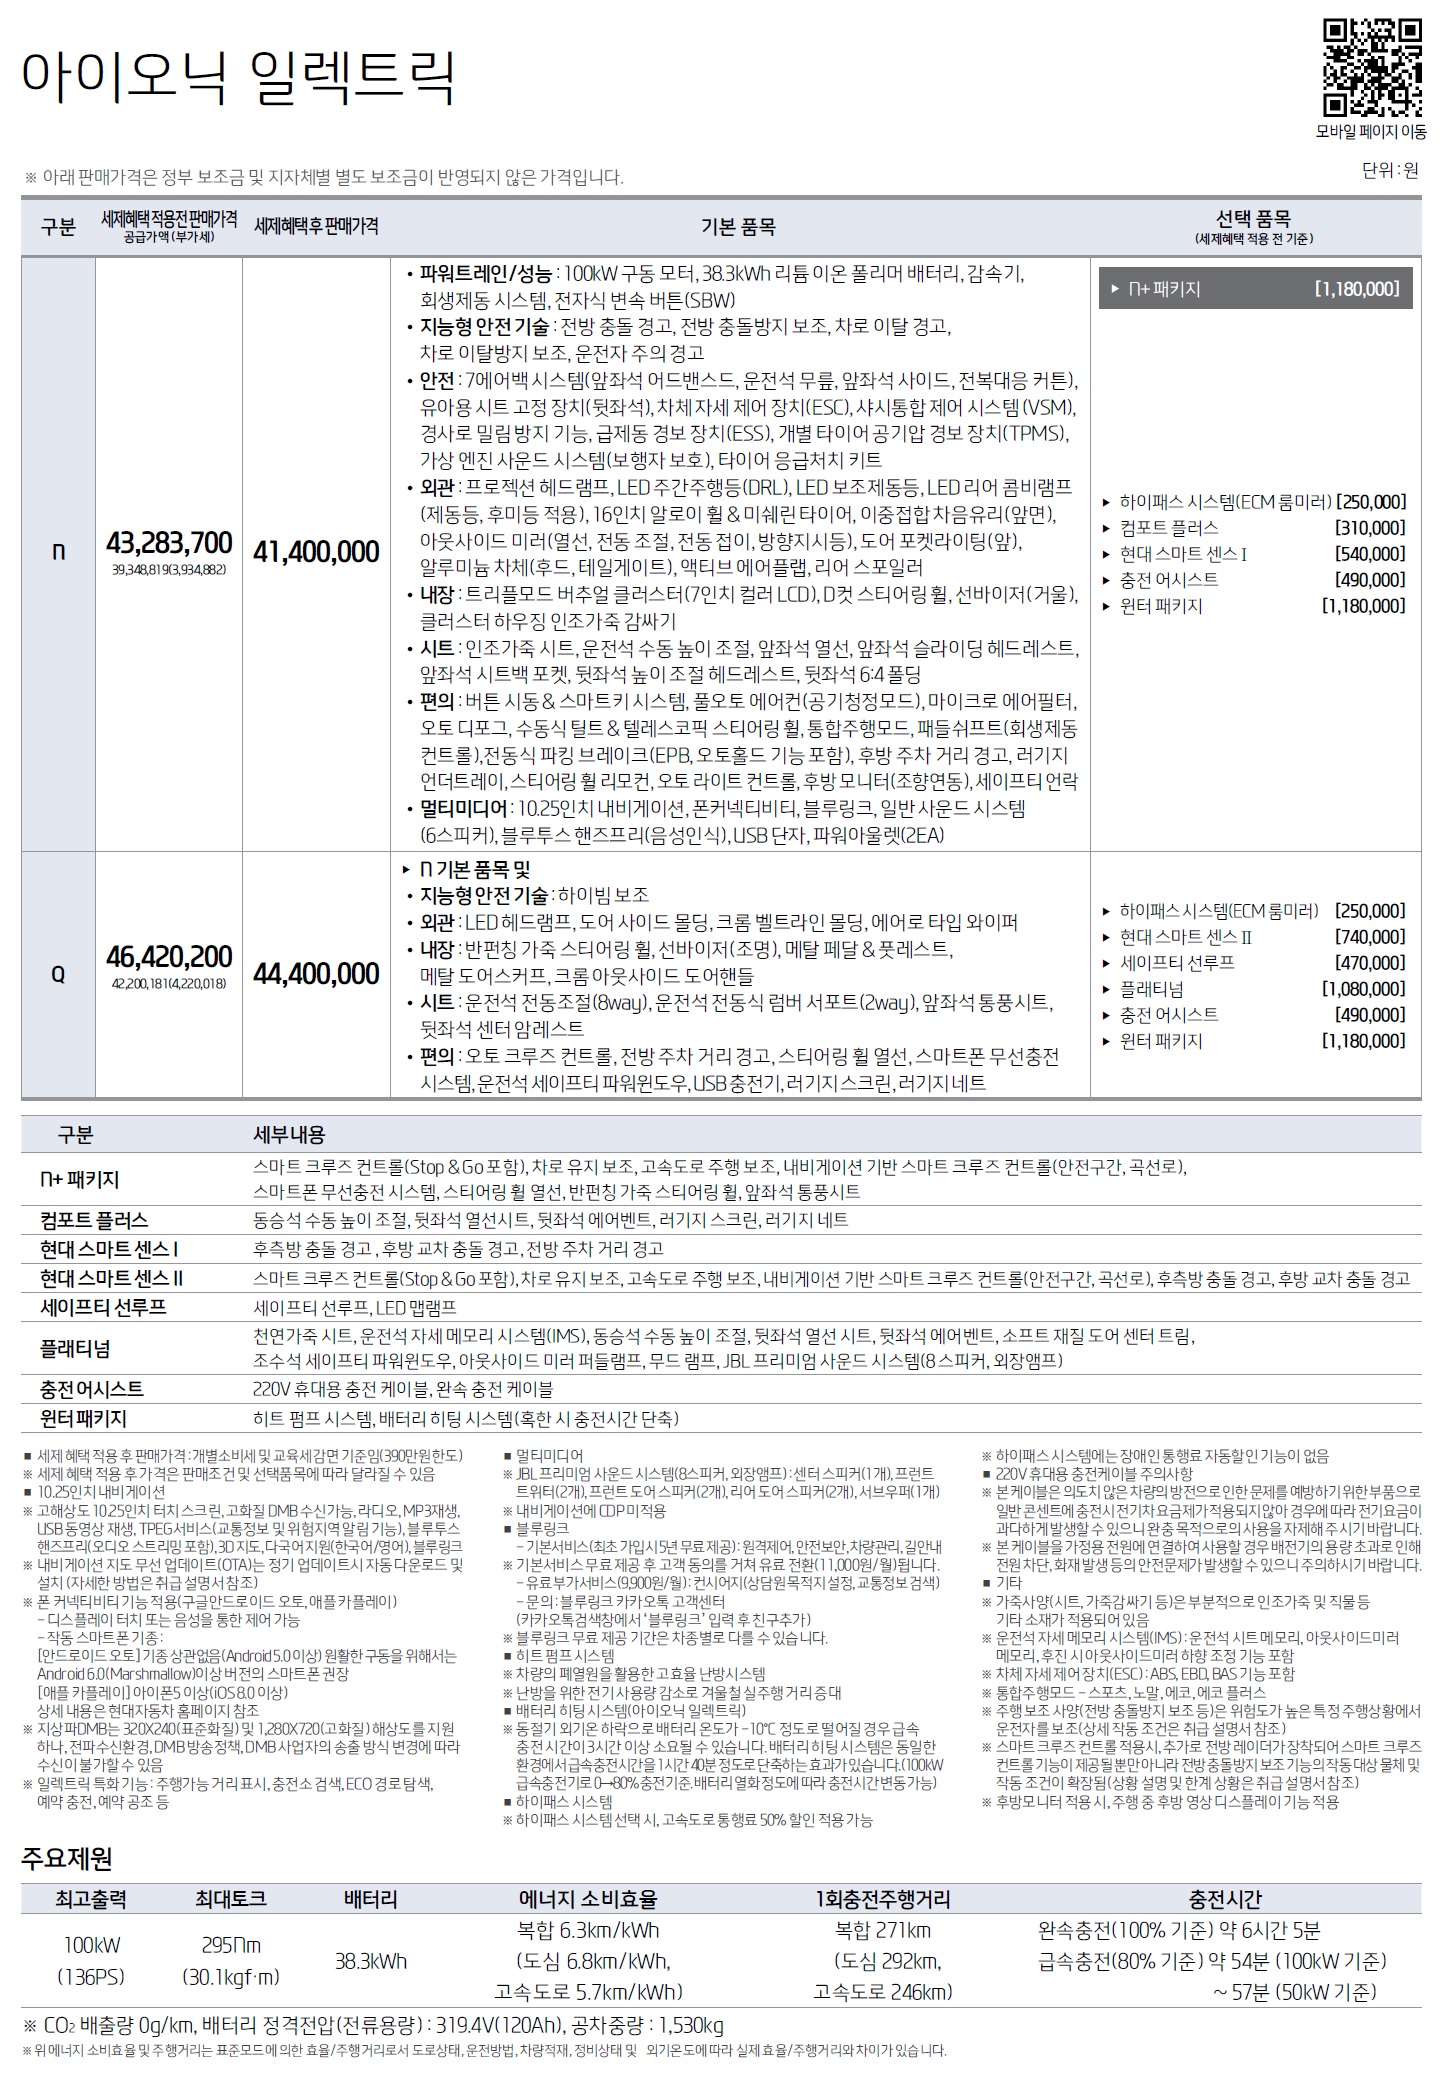 아이오닉 일렉트릭 가격표 - 2019년형 05월 -1.jpg